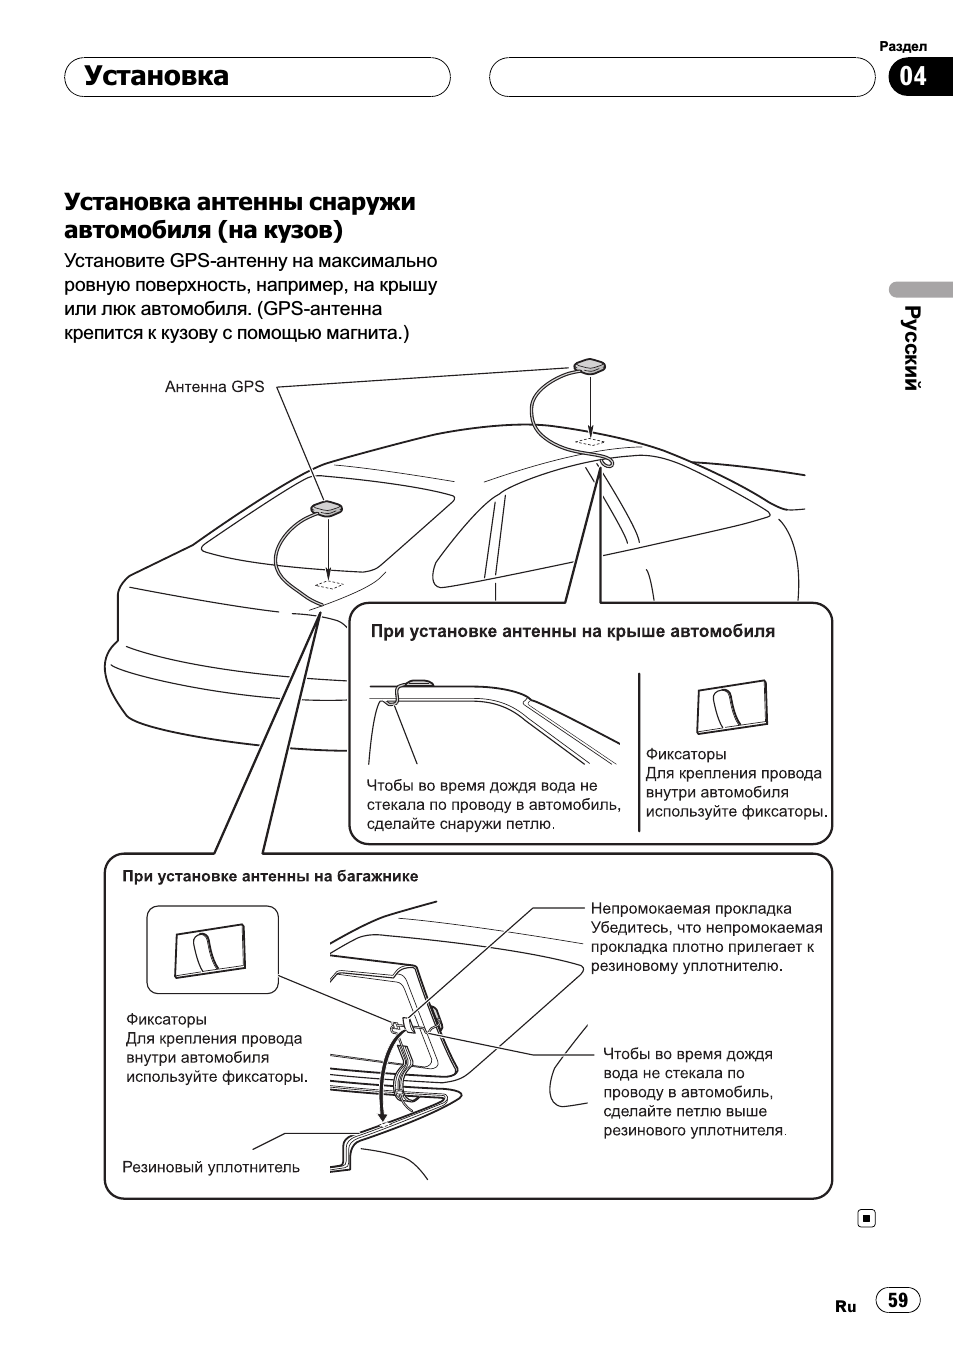 Как правильно разместить gps антенну внутри автомобиля. часть 1